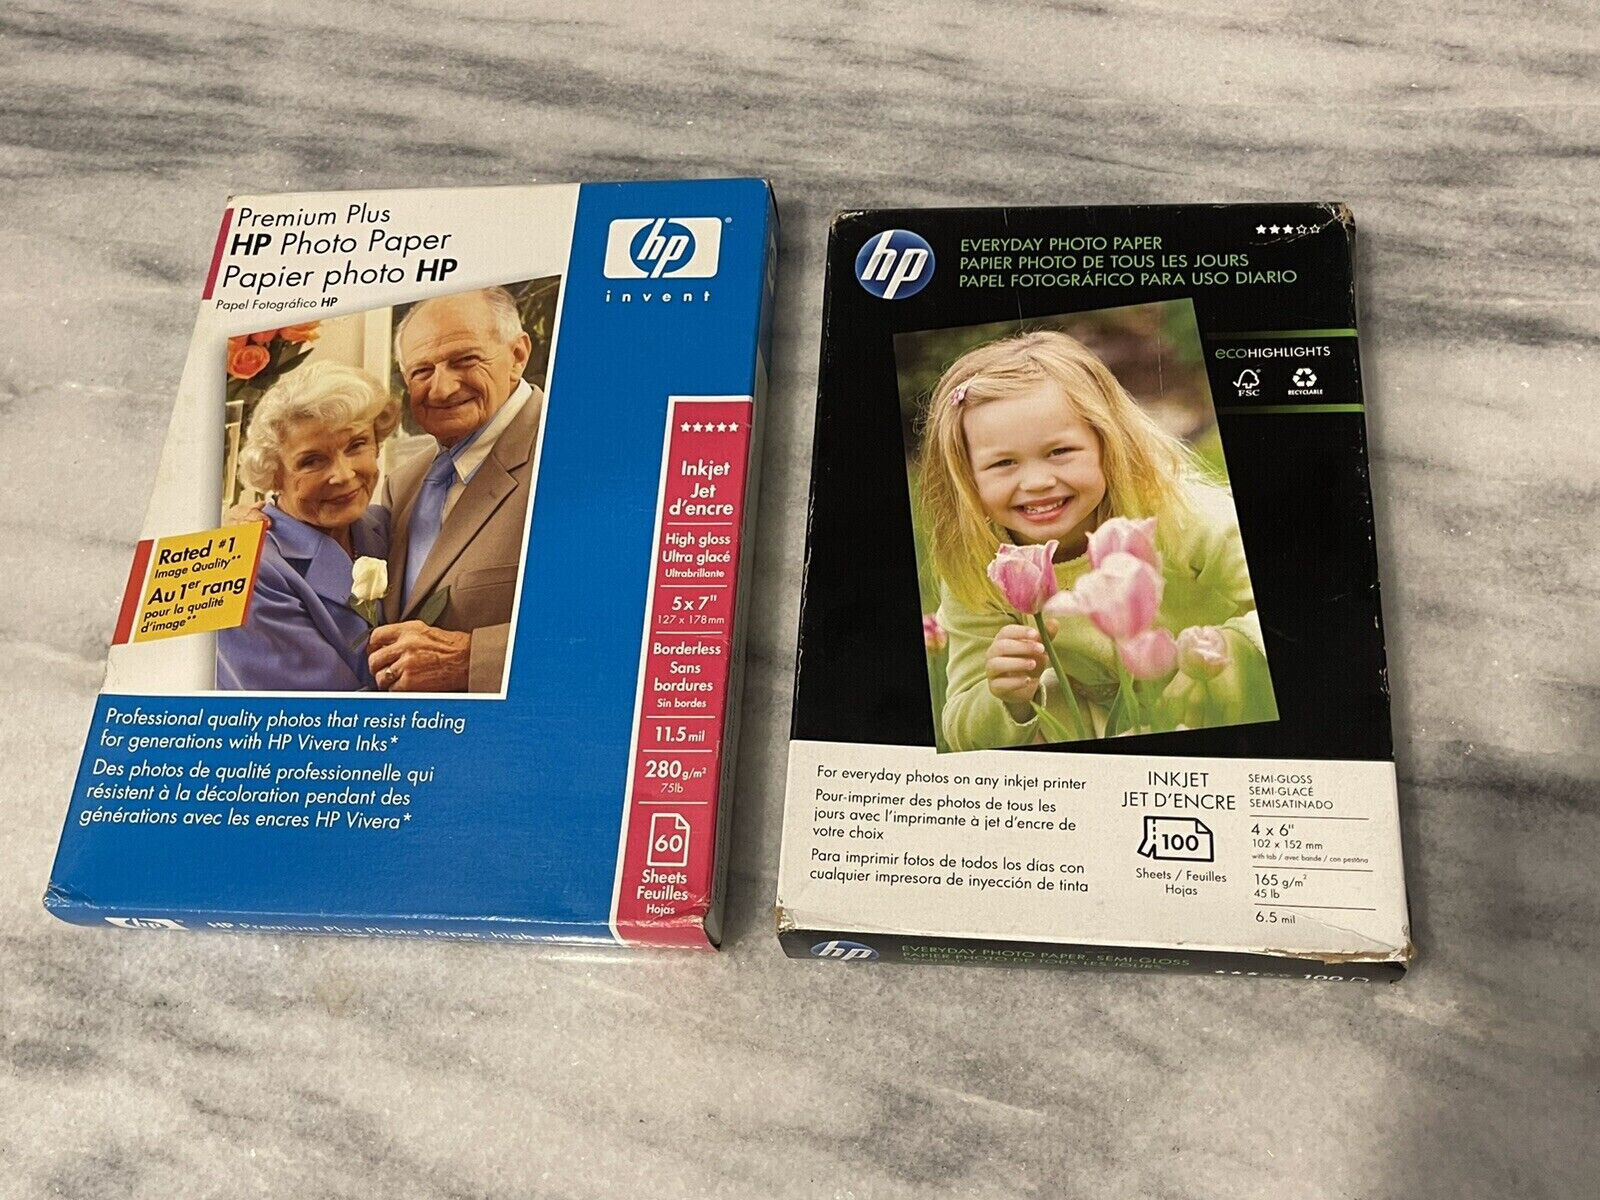 HP Inkjet Photo Paper Bundle 4x6 Semi-Gloss and 5x7 High Gloss